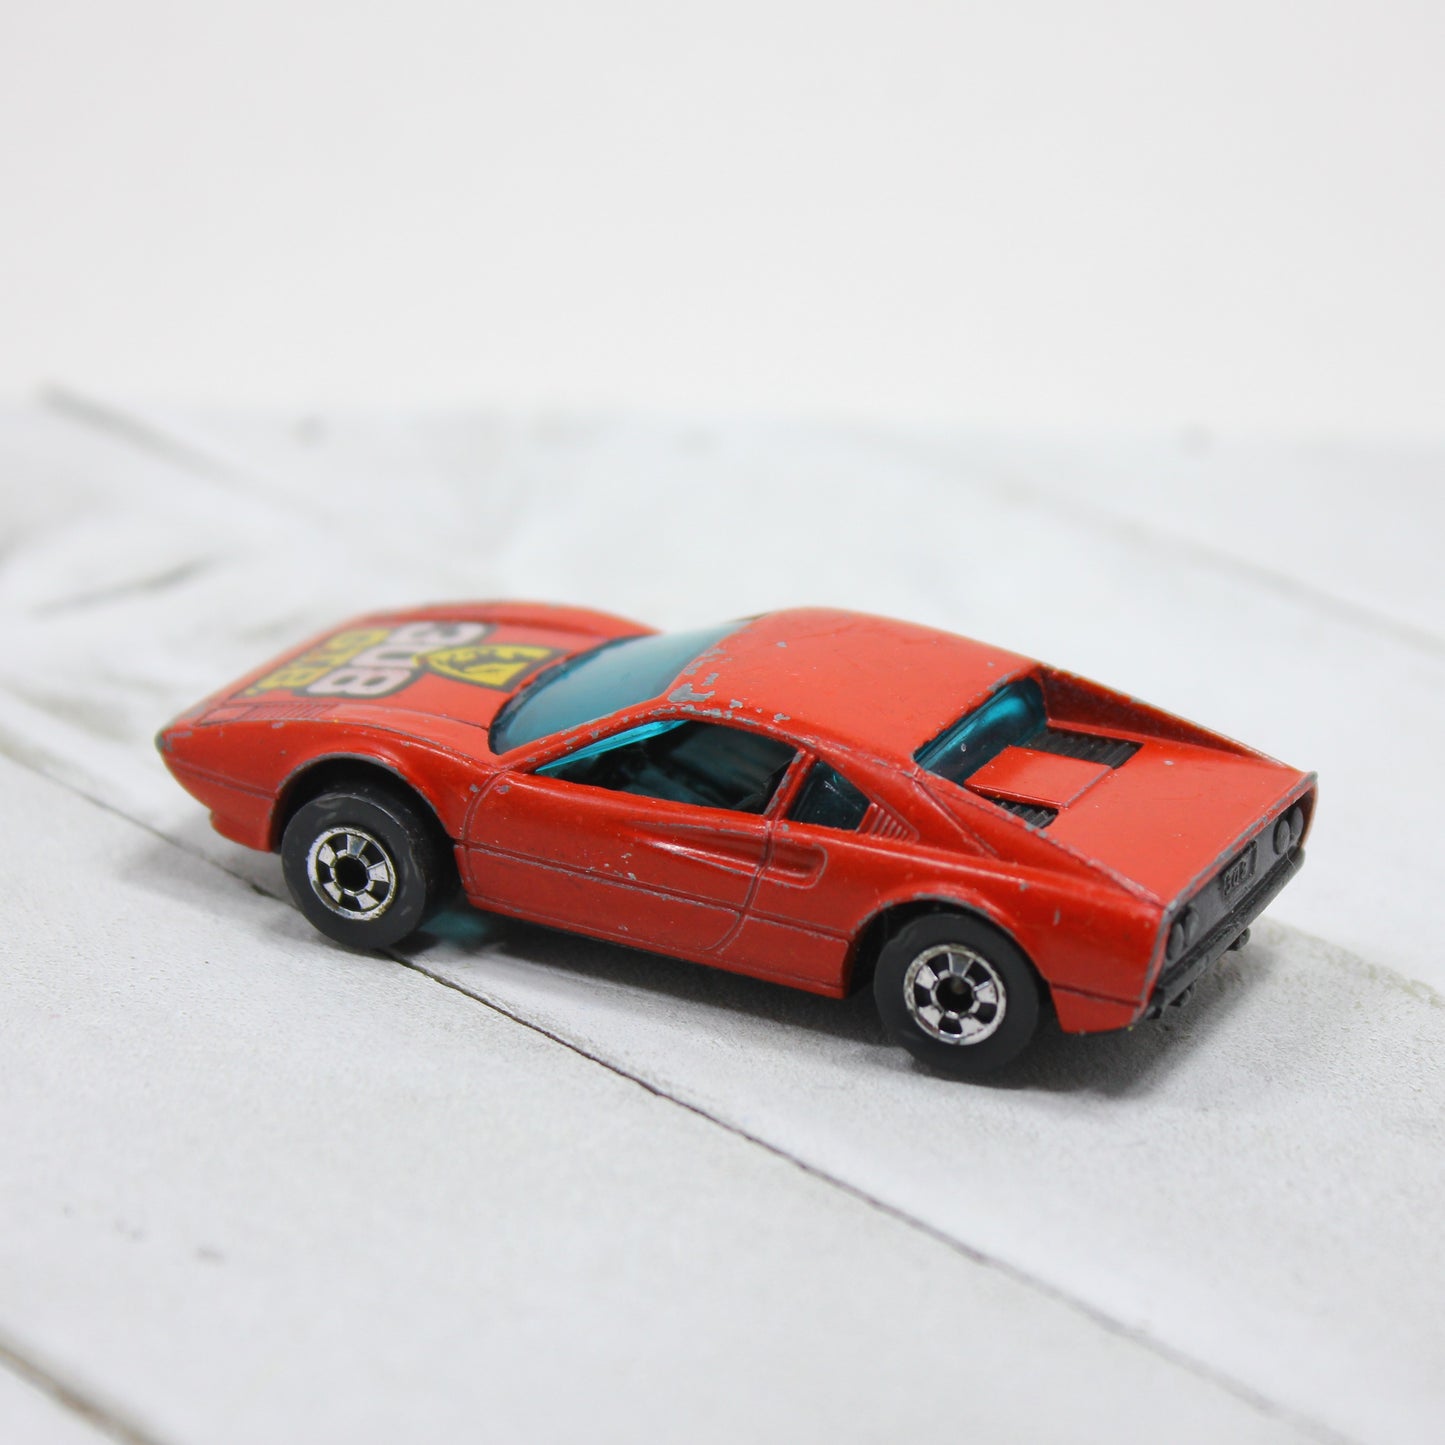 Mattel Hot Wheels 1977 Red Ferrari Racebait 308